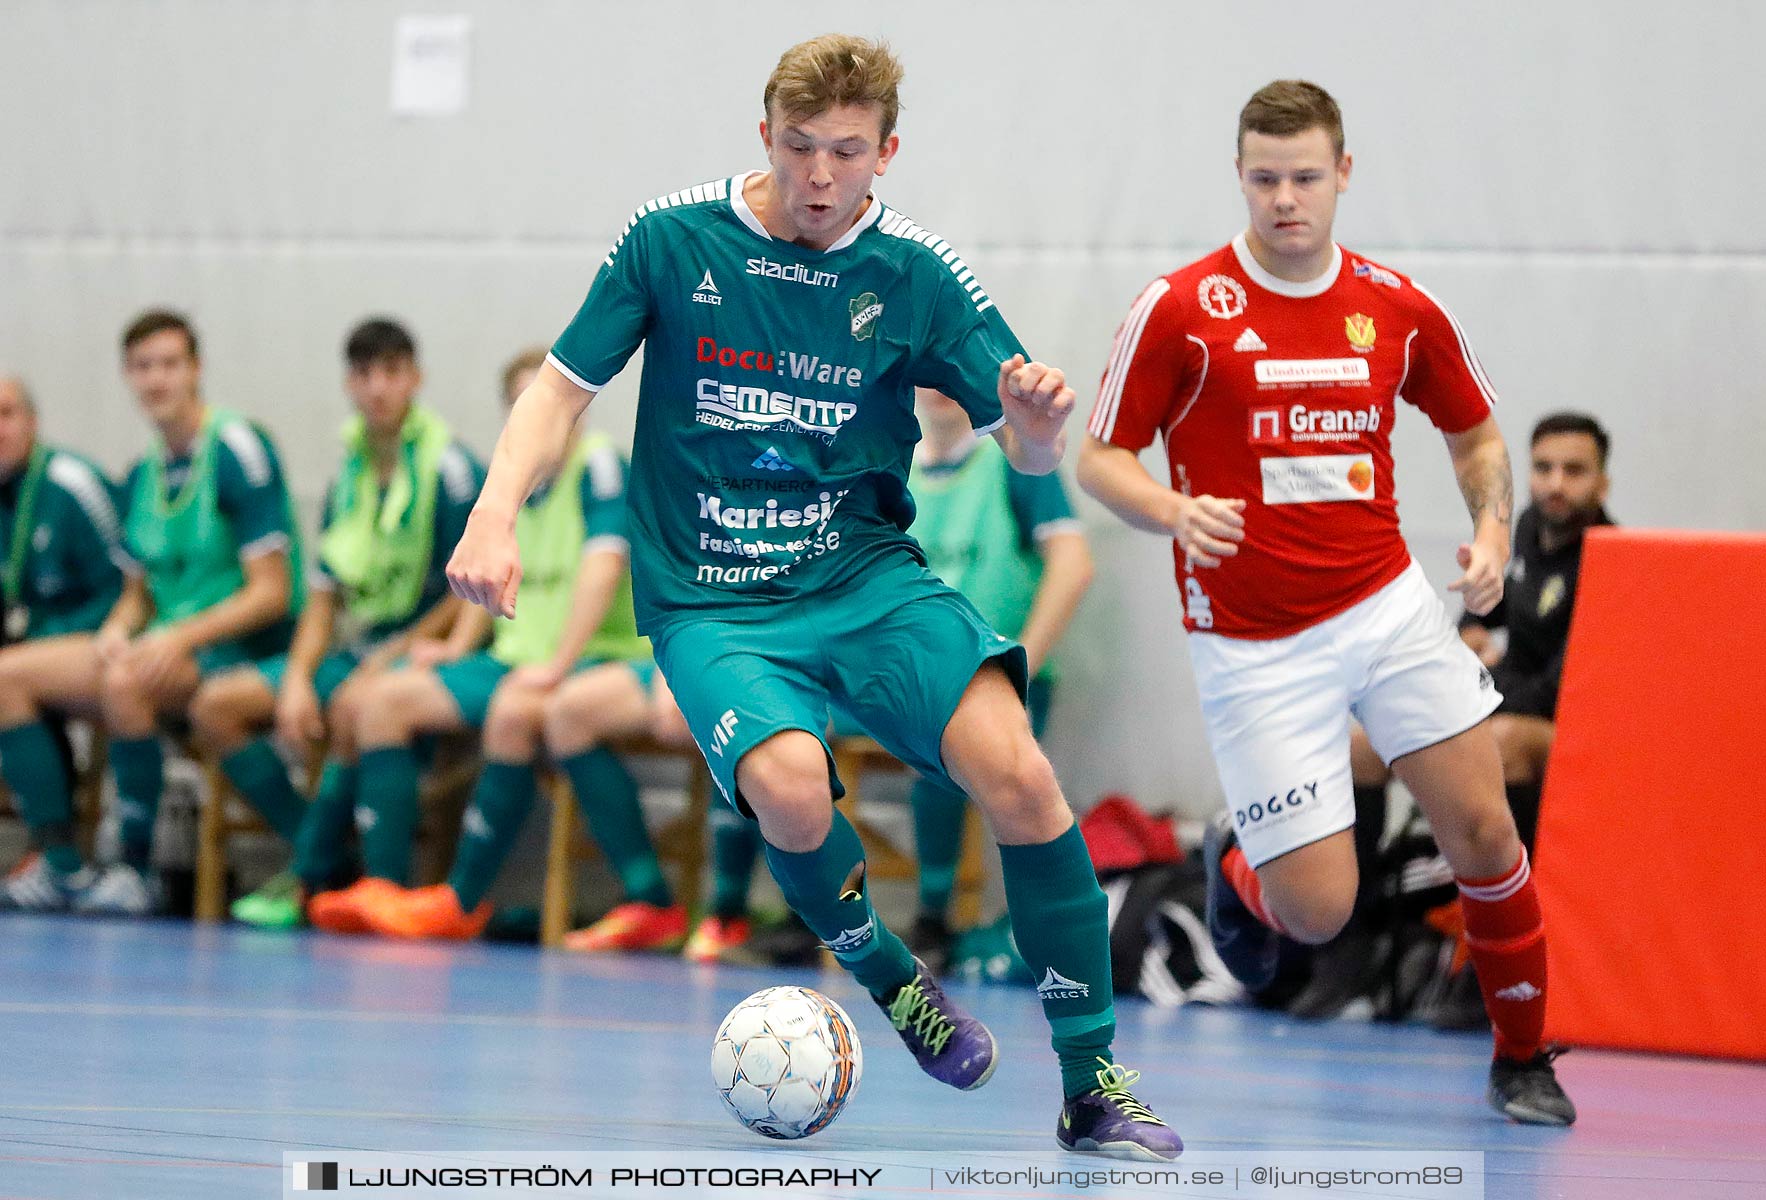 Skövde Futsalcup 2019 Herrar Vårgårda IK-Våmbs IF,herr,Arena Skövde,Skövde,Sverige,Futsal,,2019,227297